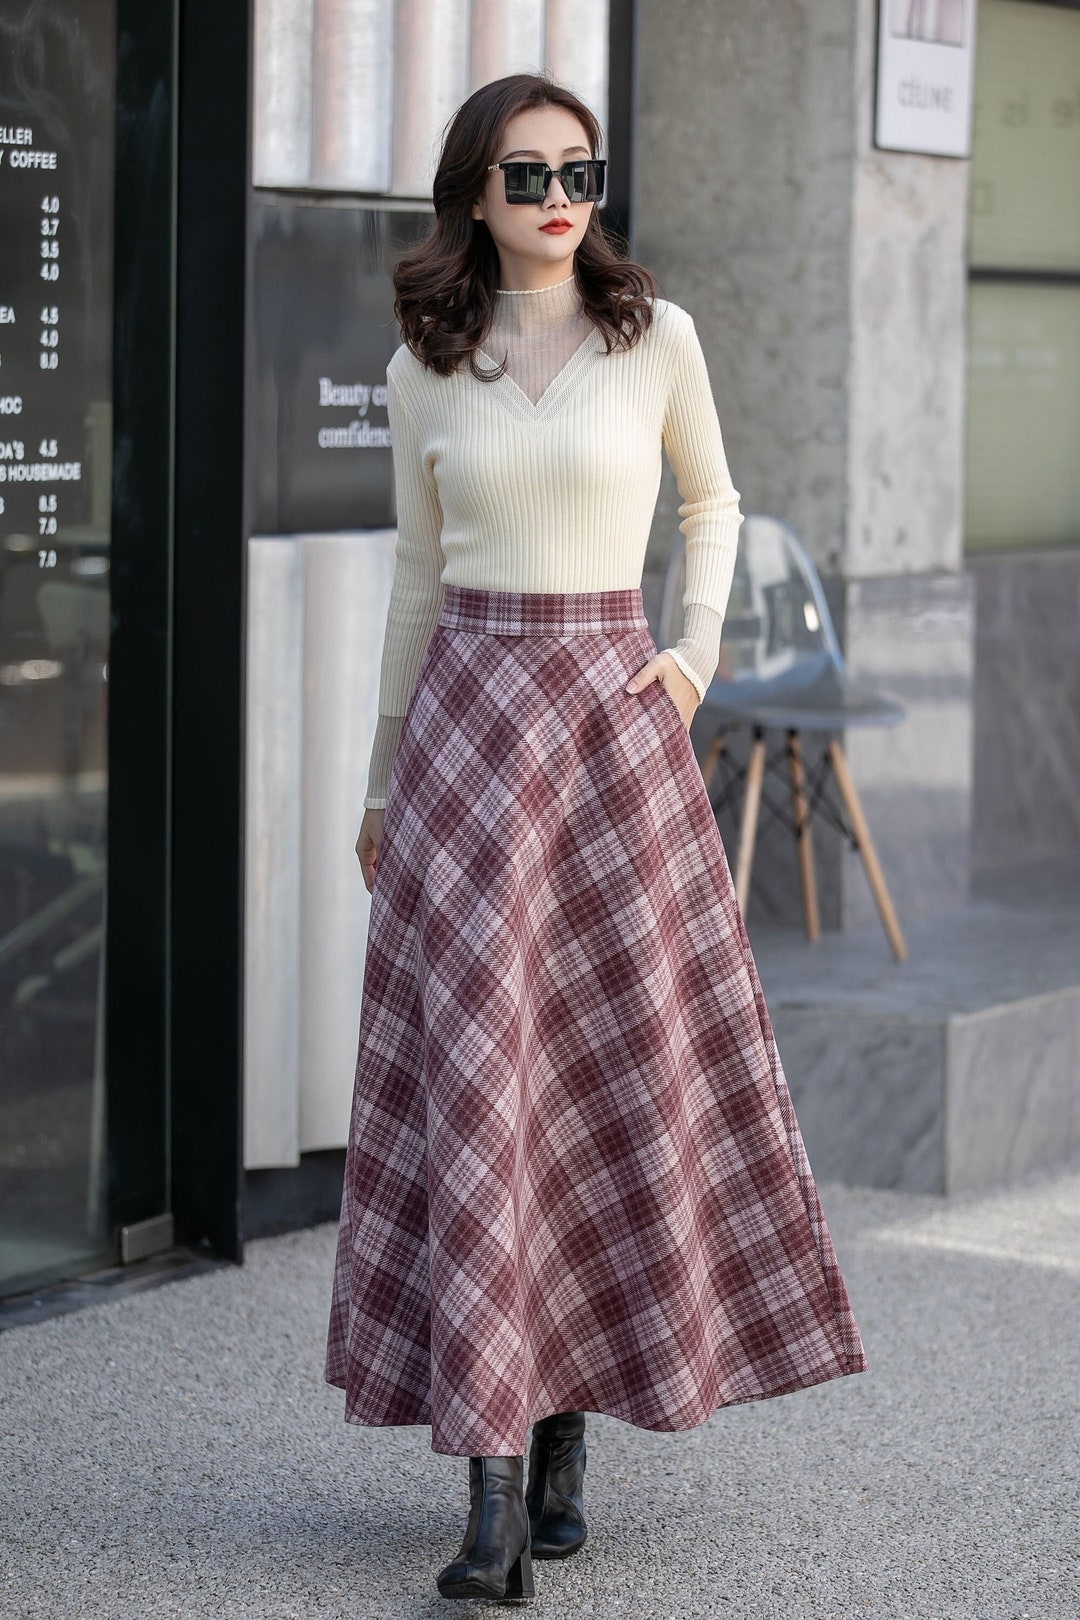 Winter Long Wool Skirt High Waisted Plaid Skirt Tartan - Etsy